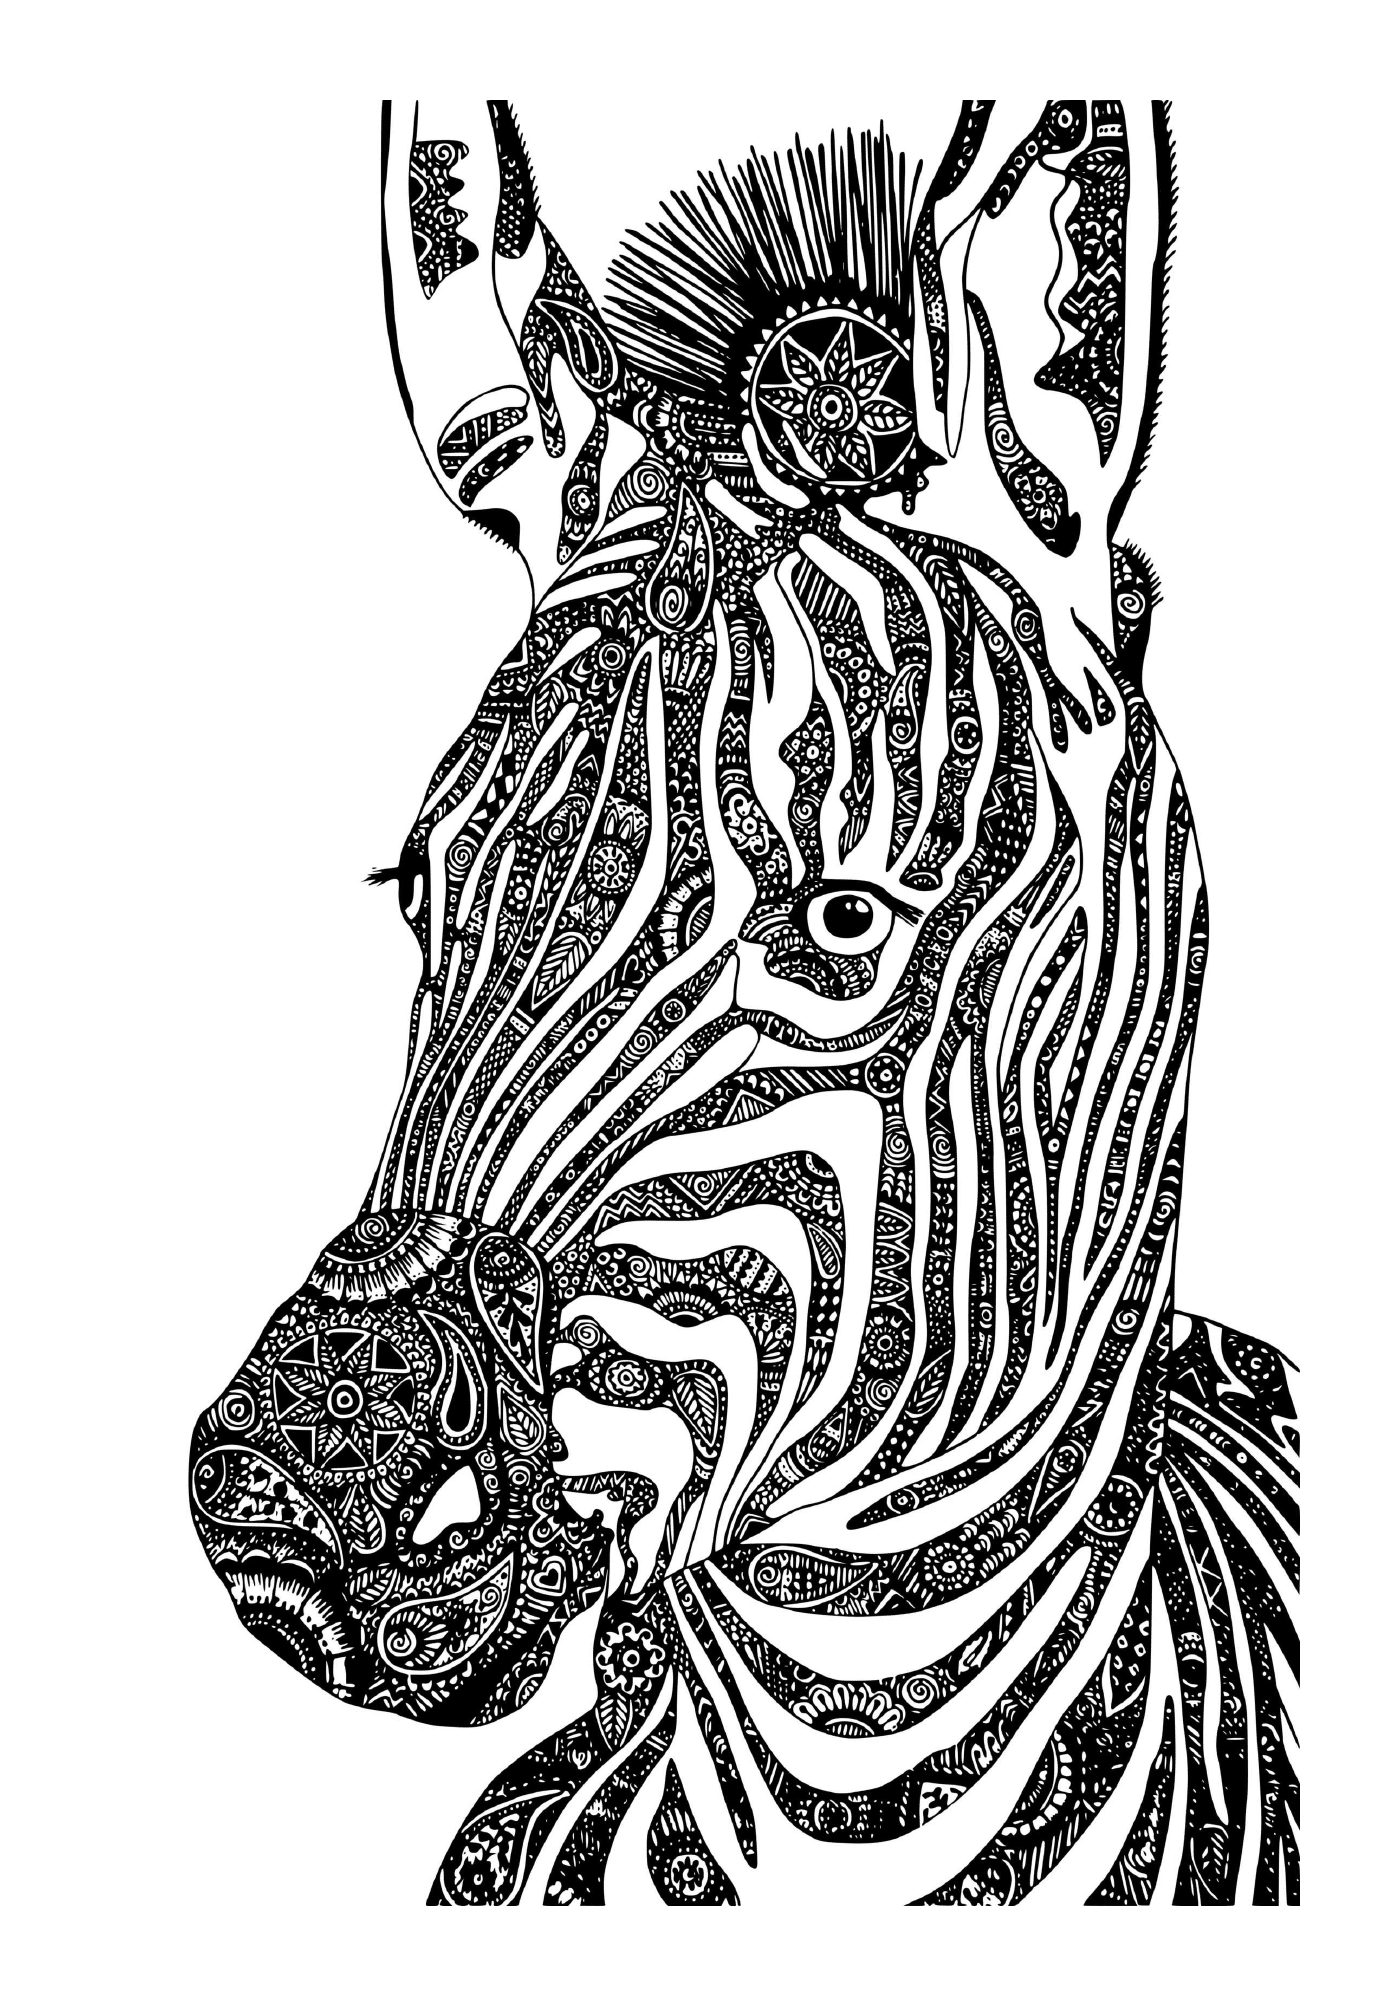  Великая дикая зебра 